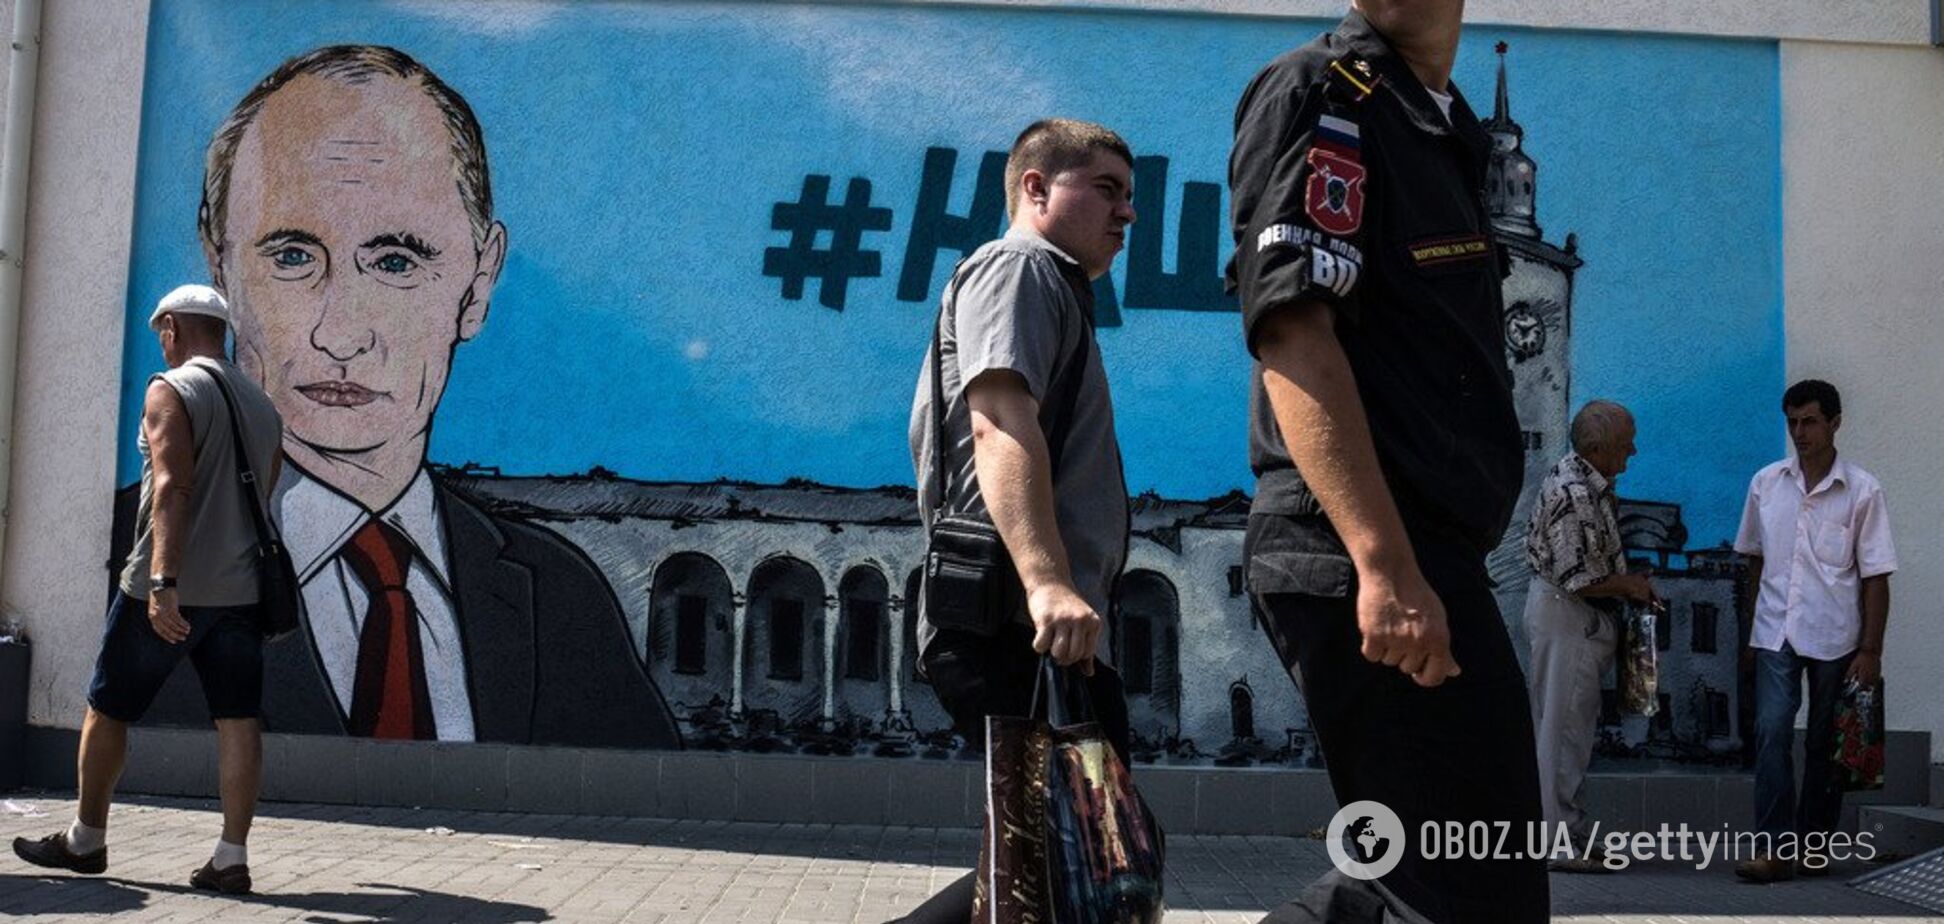 'Розчарування!' Цимбалюк пояснив, як окупанти пошкодували про захоплення Криму